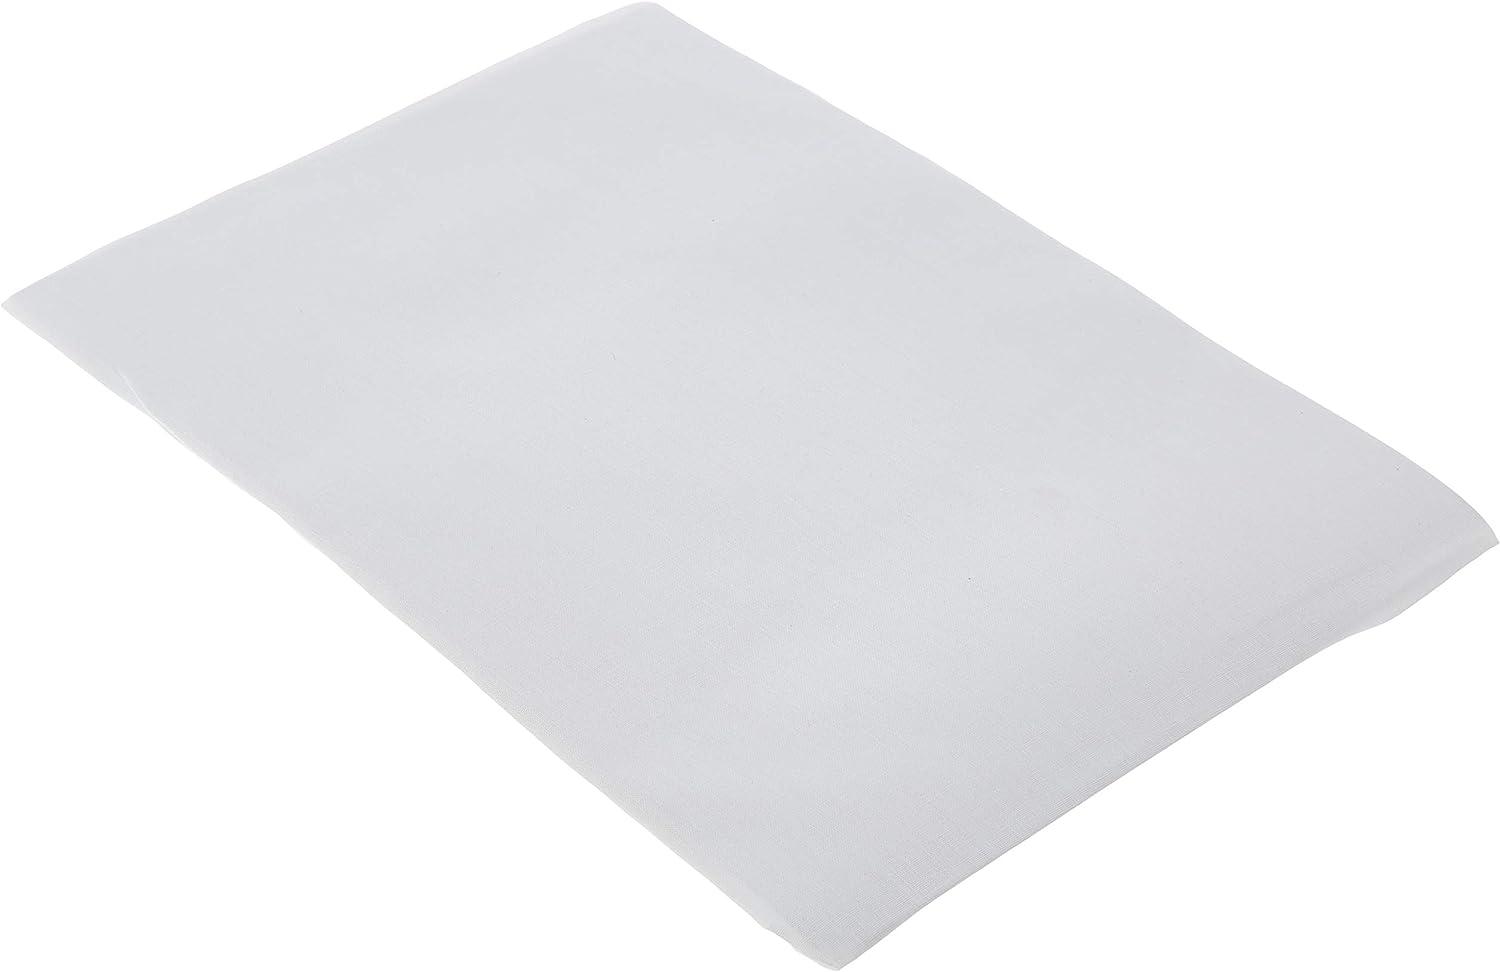 pirulos 40100001 – Spannbettlaken, Baumwolle, 50 x 80 cm, weiß Bild 1